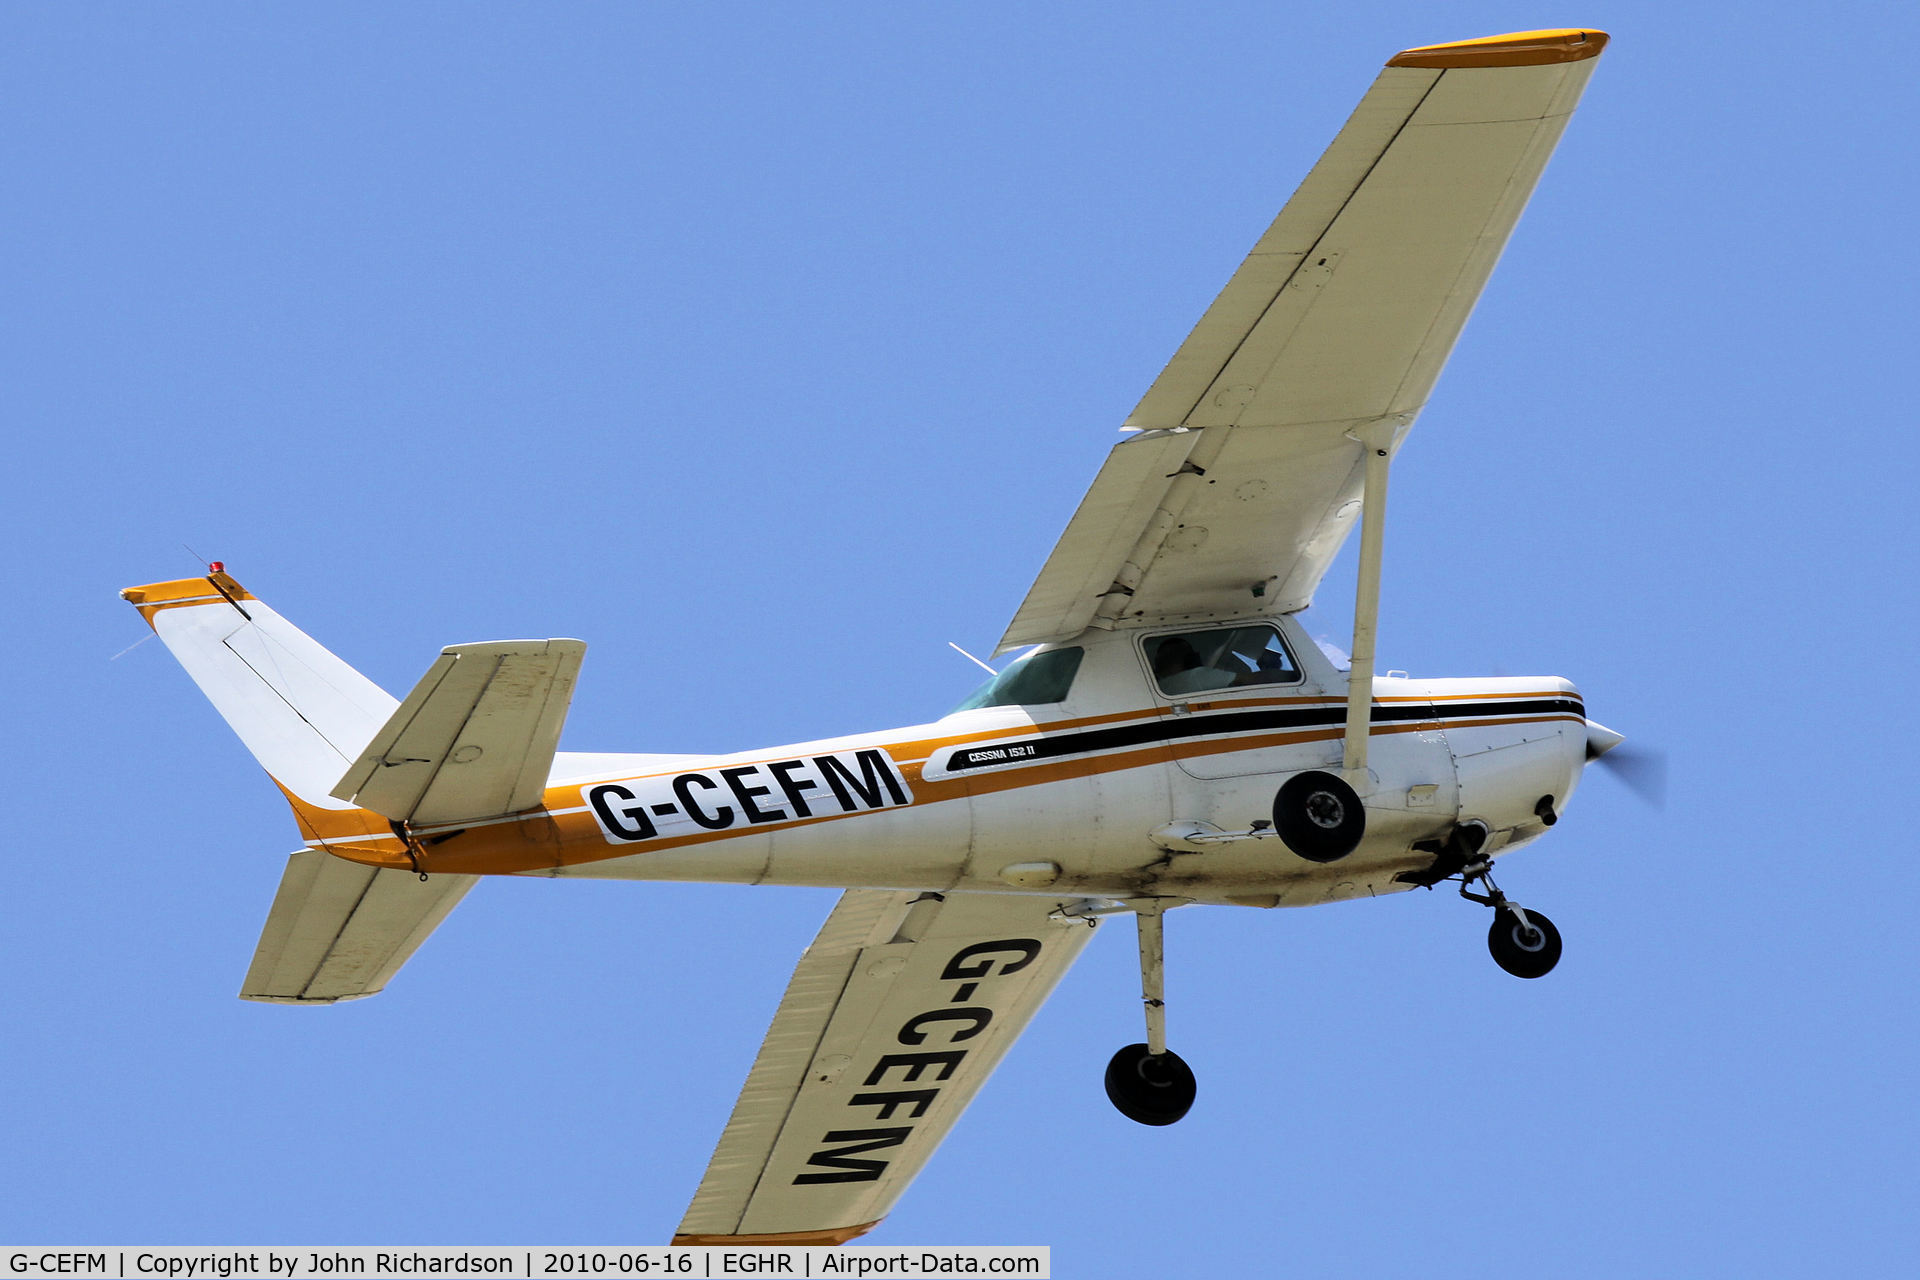 G-CEFM, 1980 Cessna 152 C/N 152-84357, Departing Goodwood